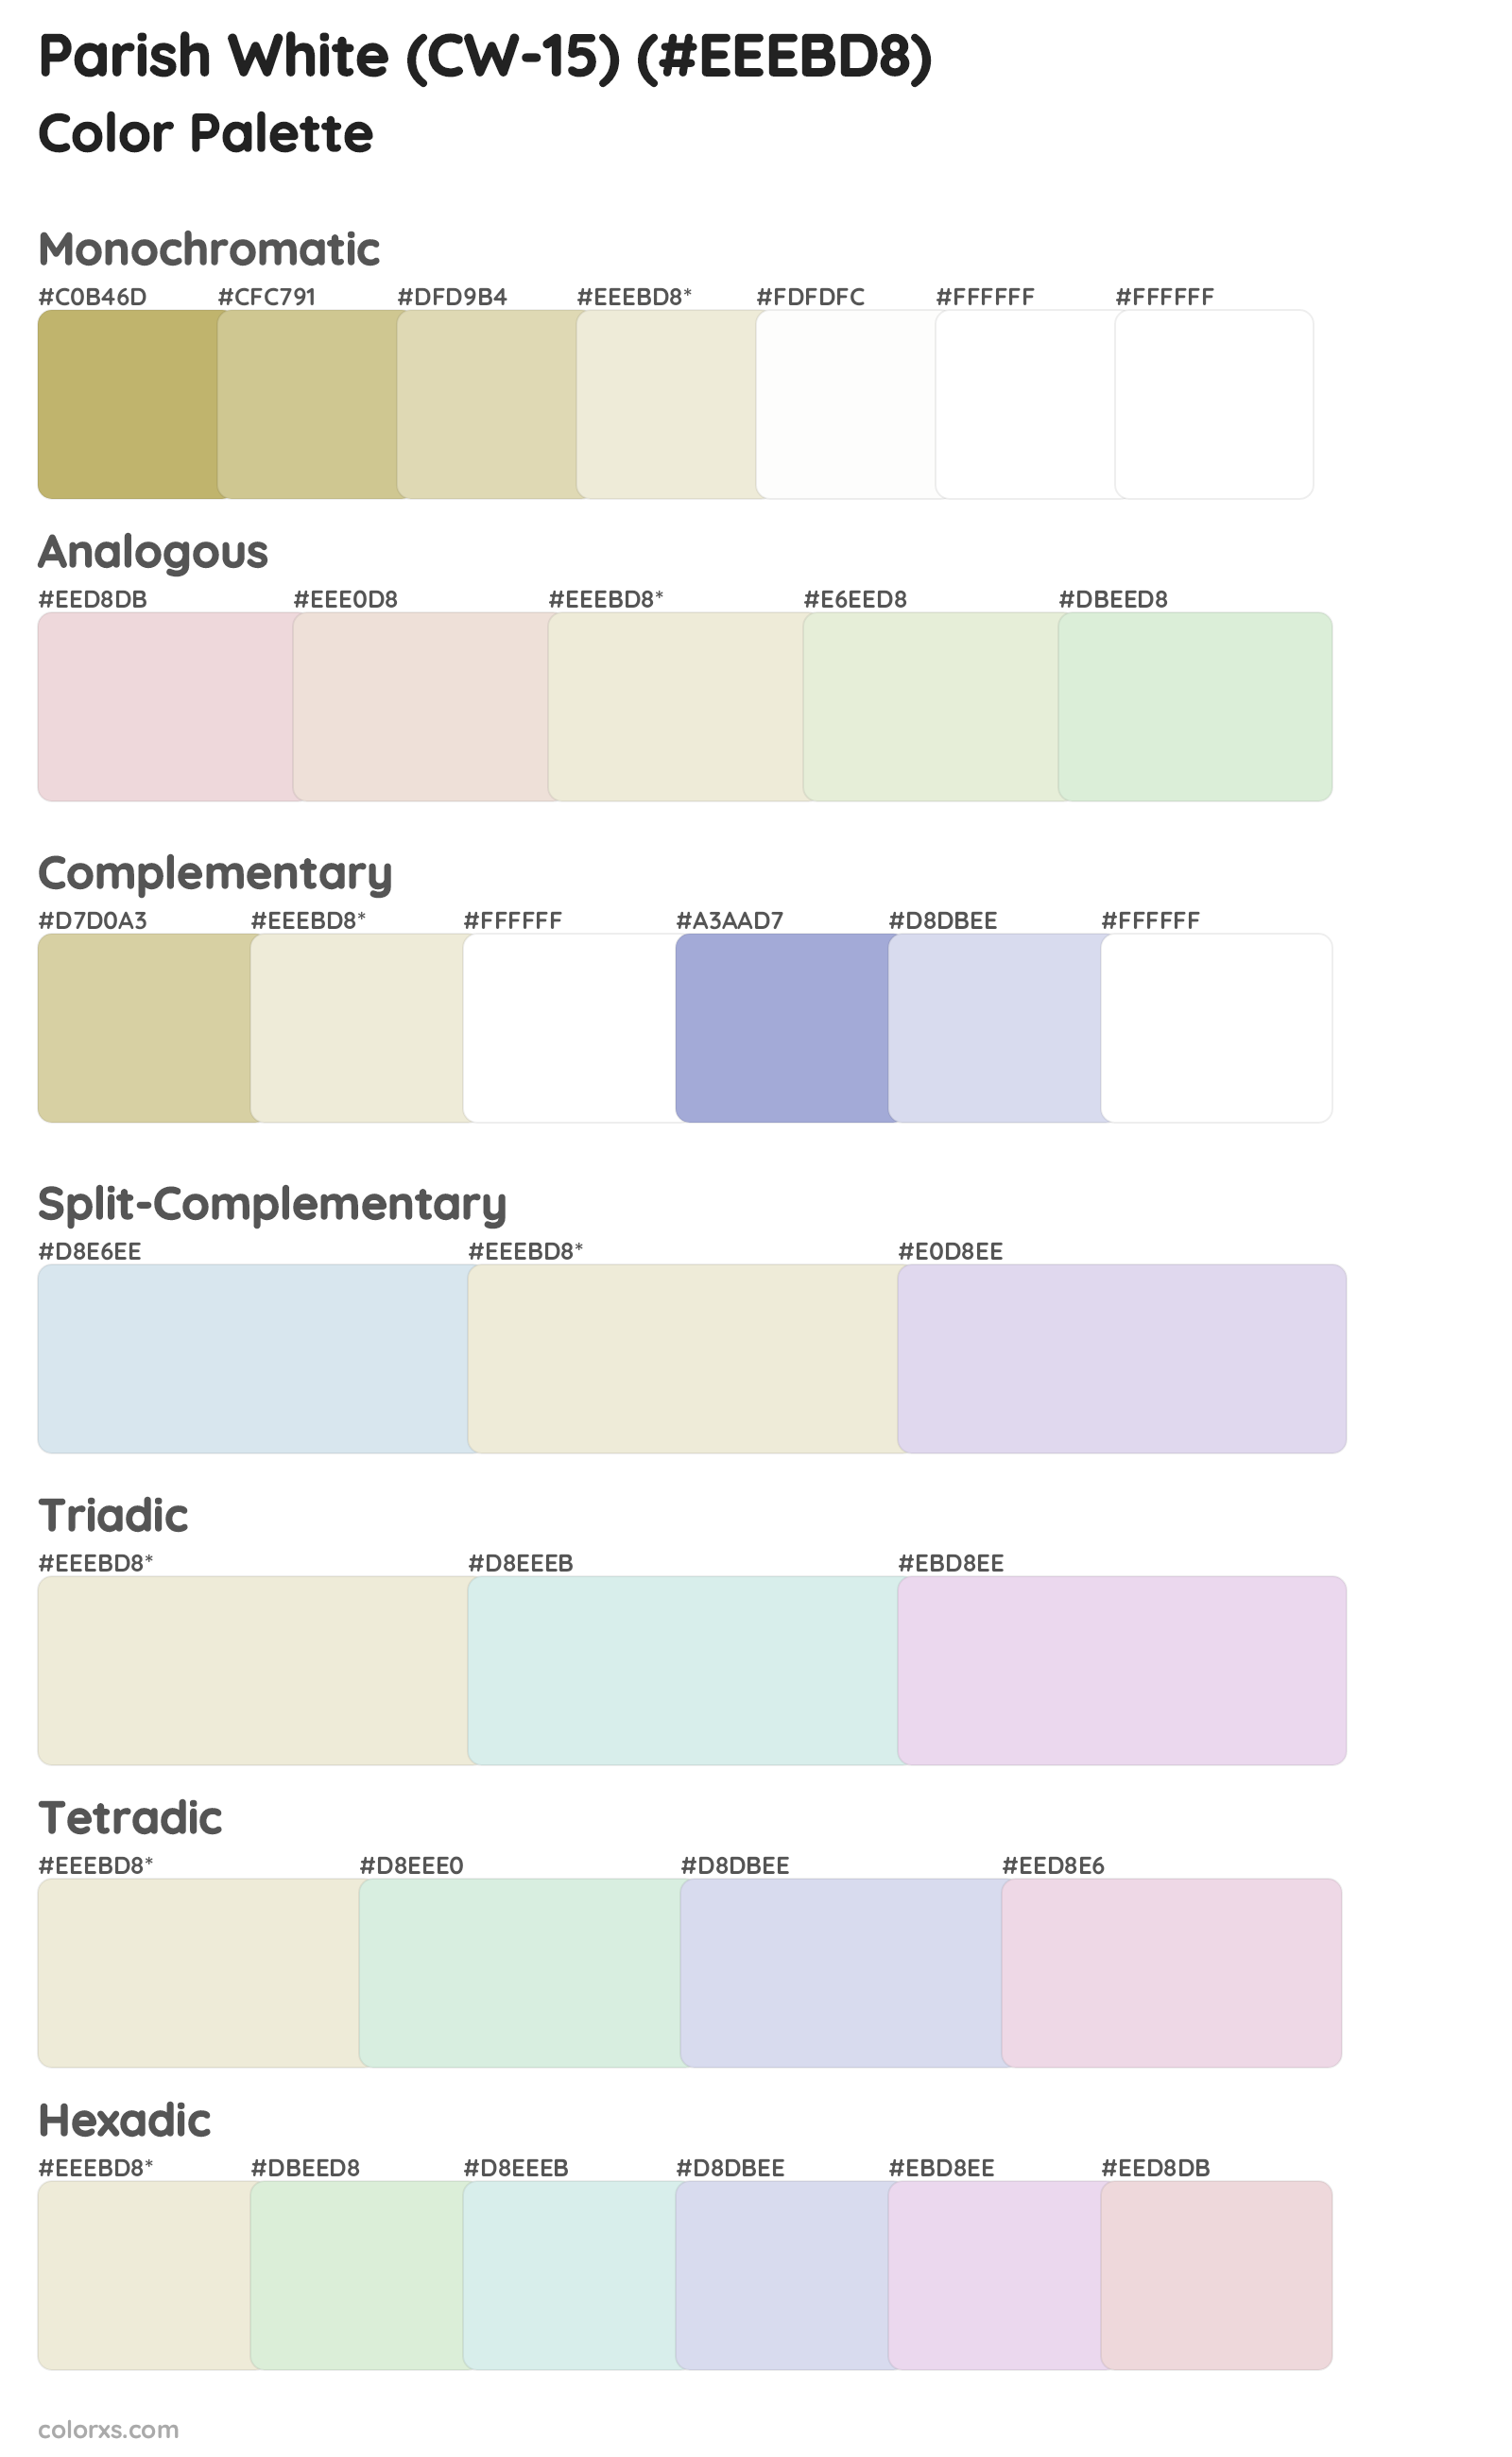 Parish White (CW-15) Color Scheme Palettes